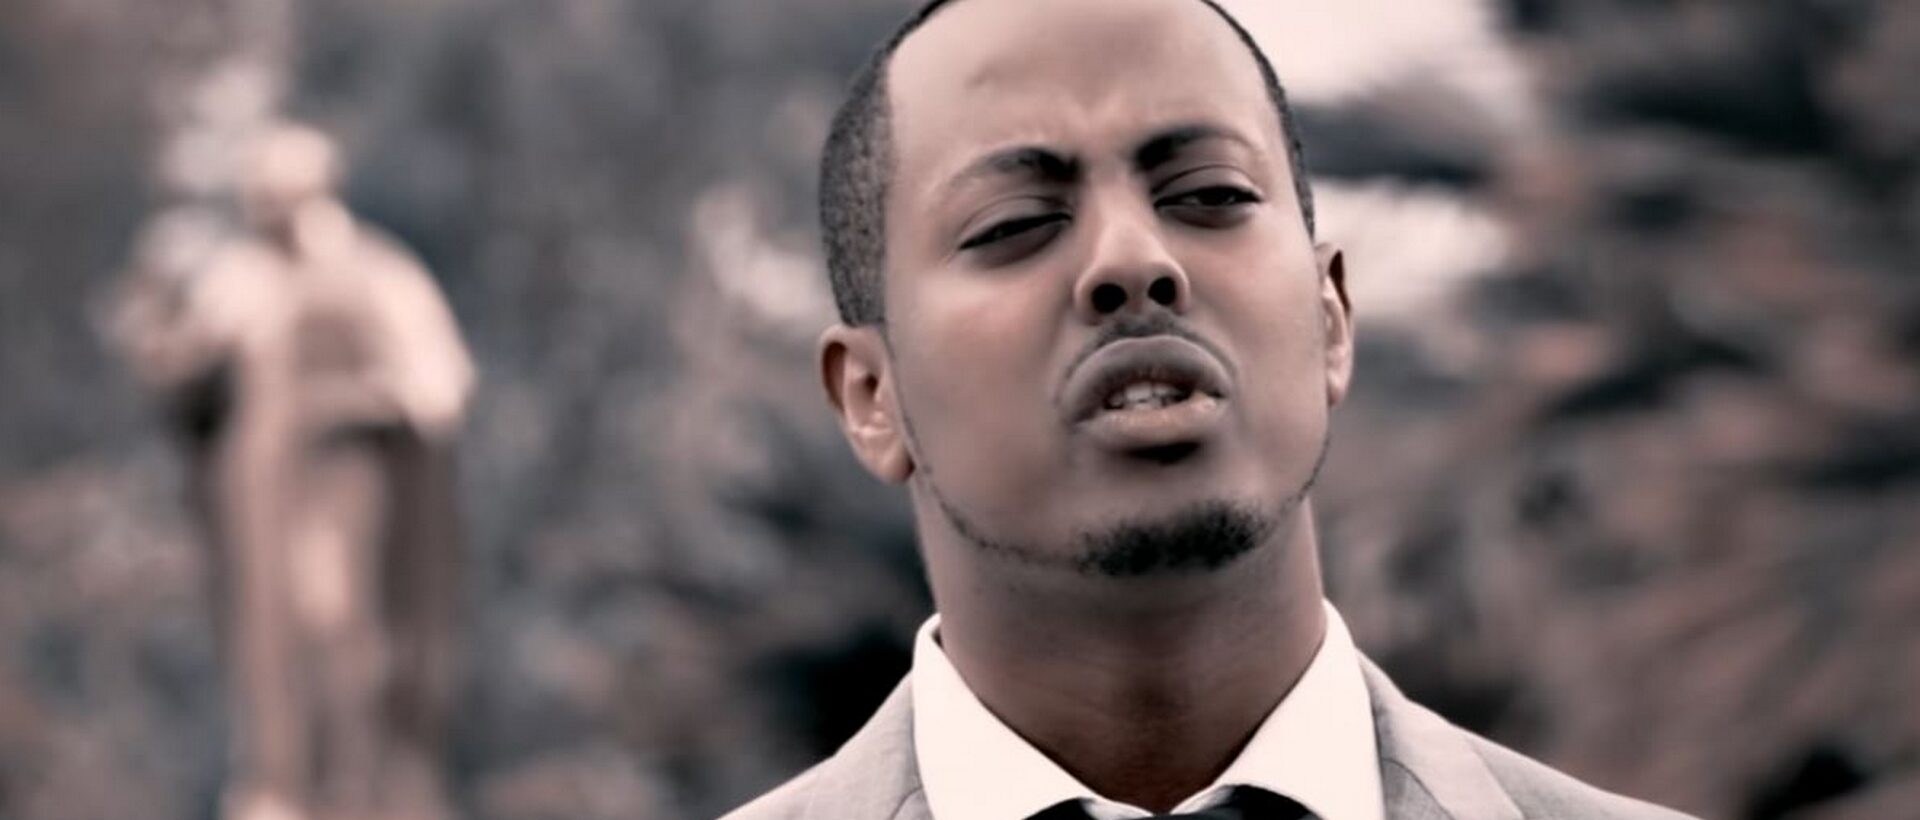 Le chanteur de gospel rwandais, Kzito Mihigo est mort le 17 février 2020 | capture d'écran Youtube